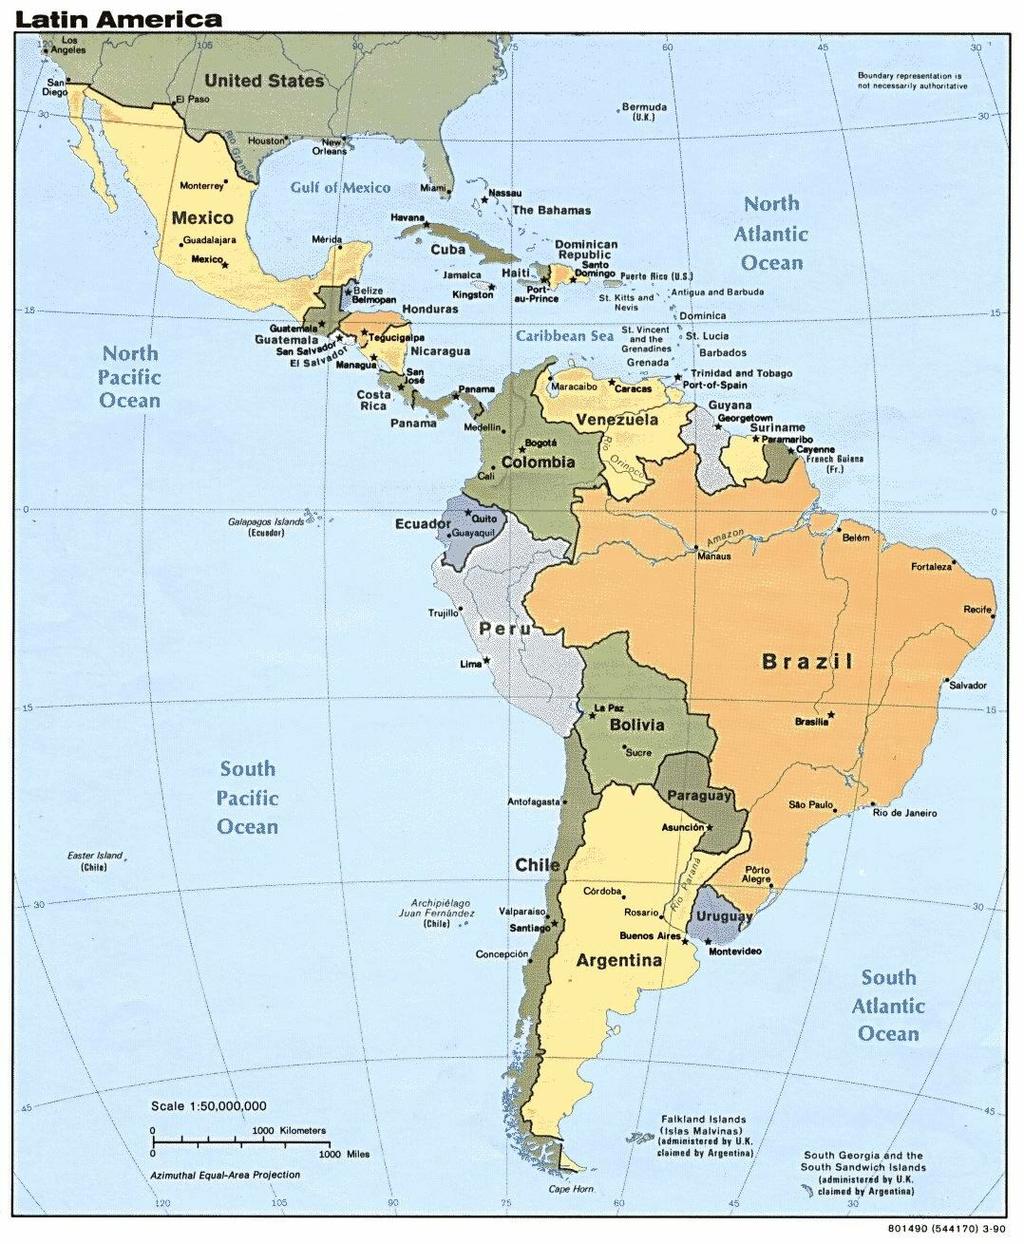 COOPERATIVISMO EN AMERICA LATINA Aproximadamente el 10% de la población de América Latina está vinculado